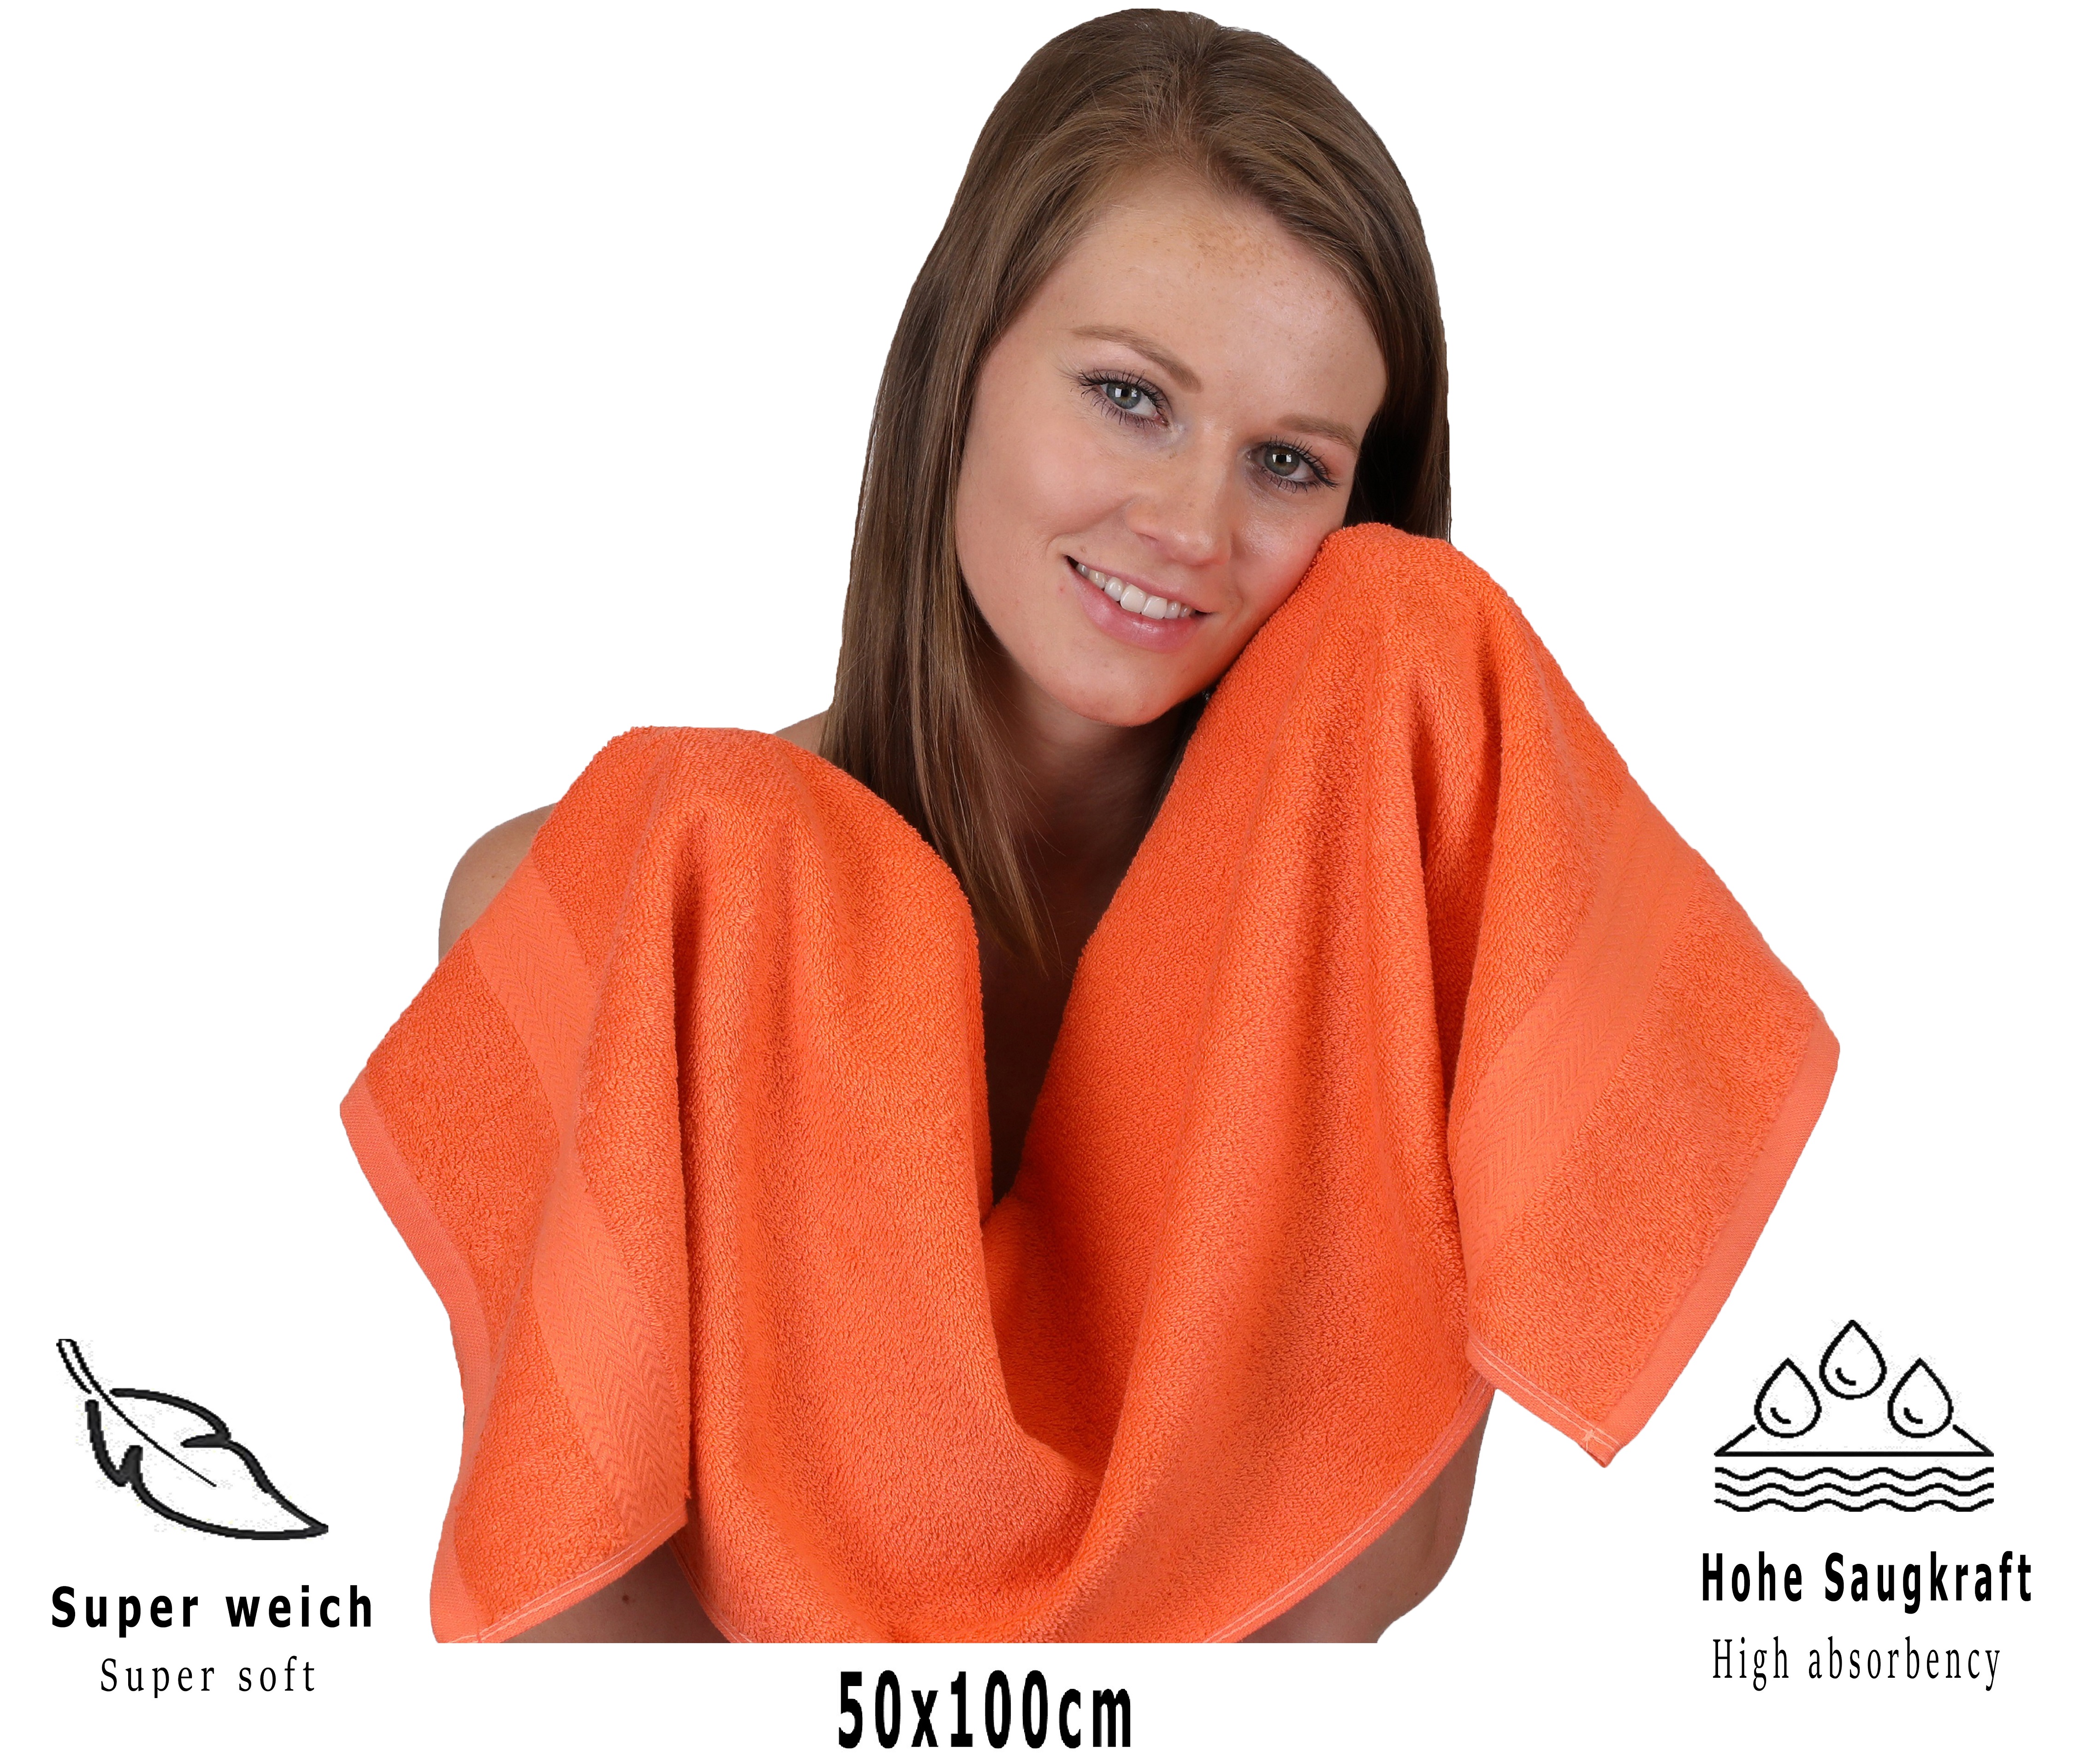 Betz 10 toallas de lavabo PREMIUM 100% algodÃ³n tamaÃ±o 50 x100 cm color  naranja sanguineo